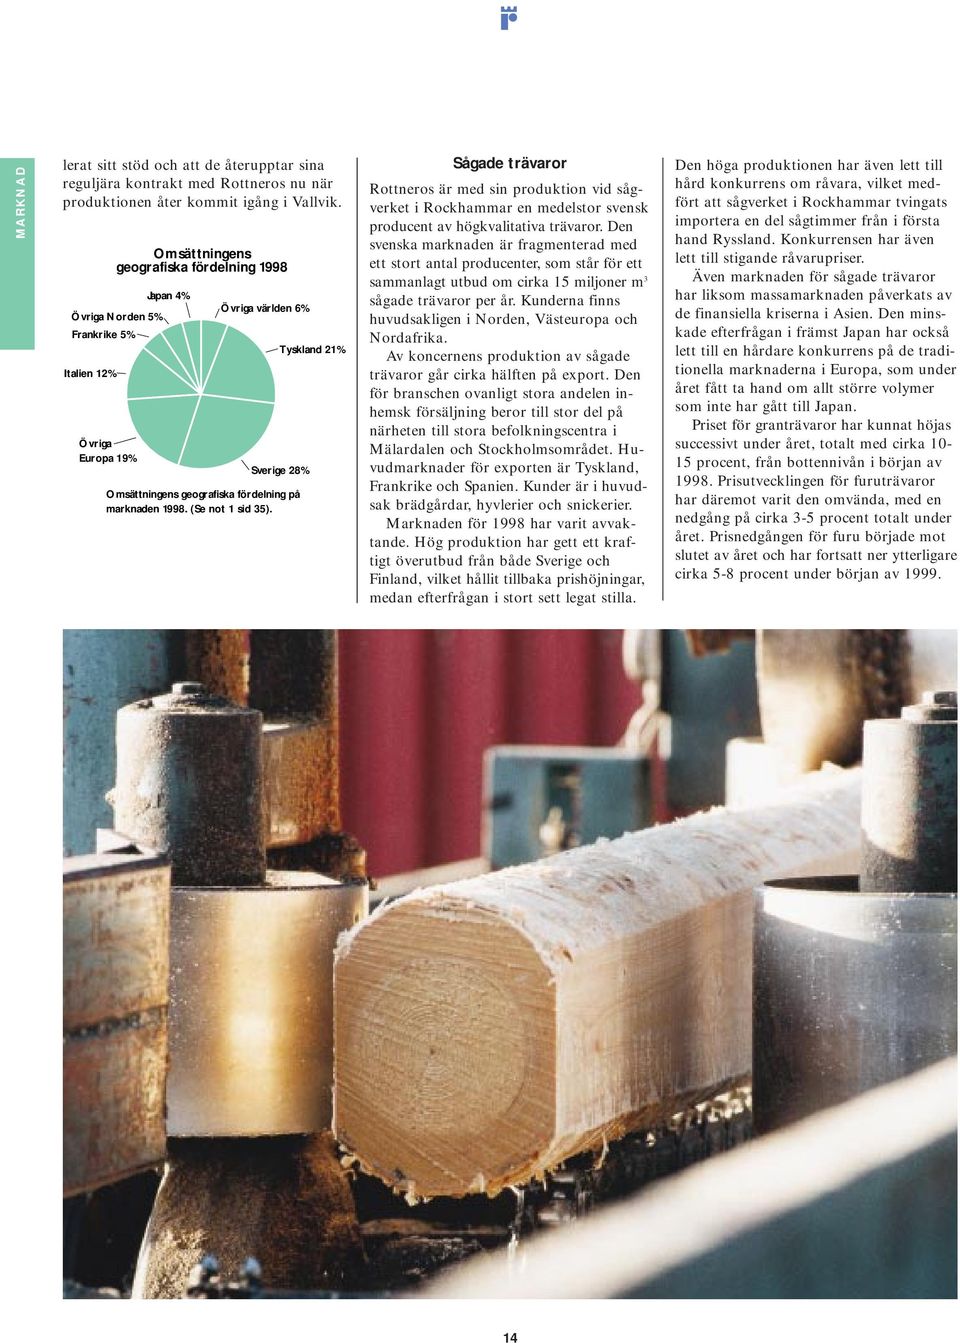 (Se not 1 sid 35). Tyskland 21% Sågade trävaror Rottneros är med sin produktion vid sågverket i Rockhammar en medelstor svensk producent av högkvalitativa trävaror.